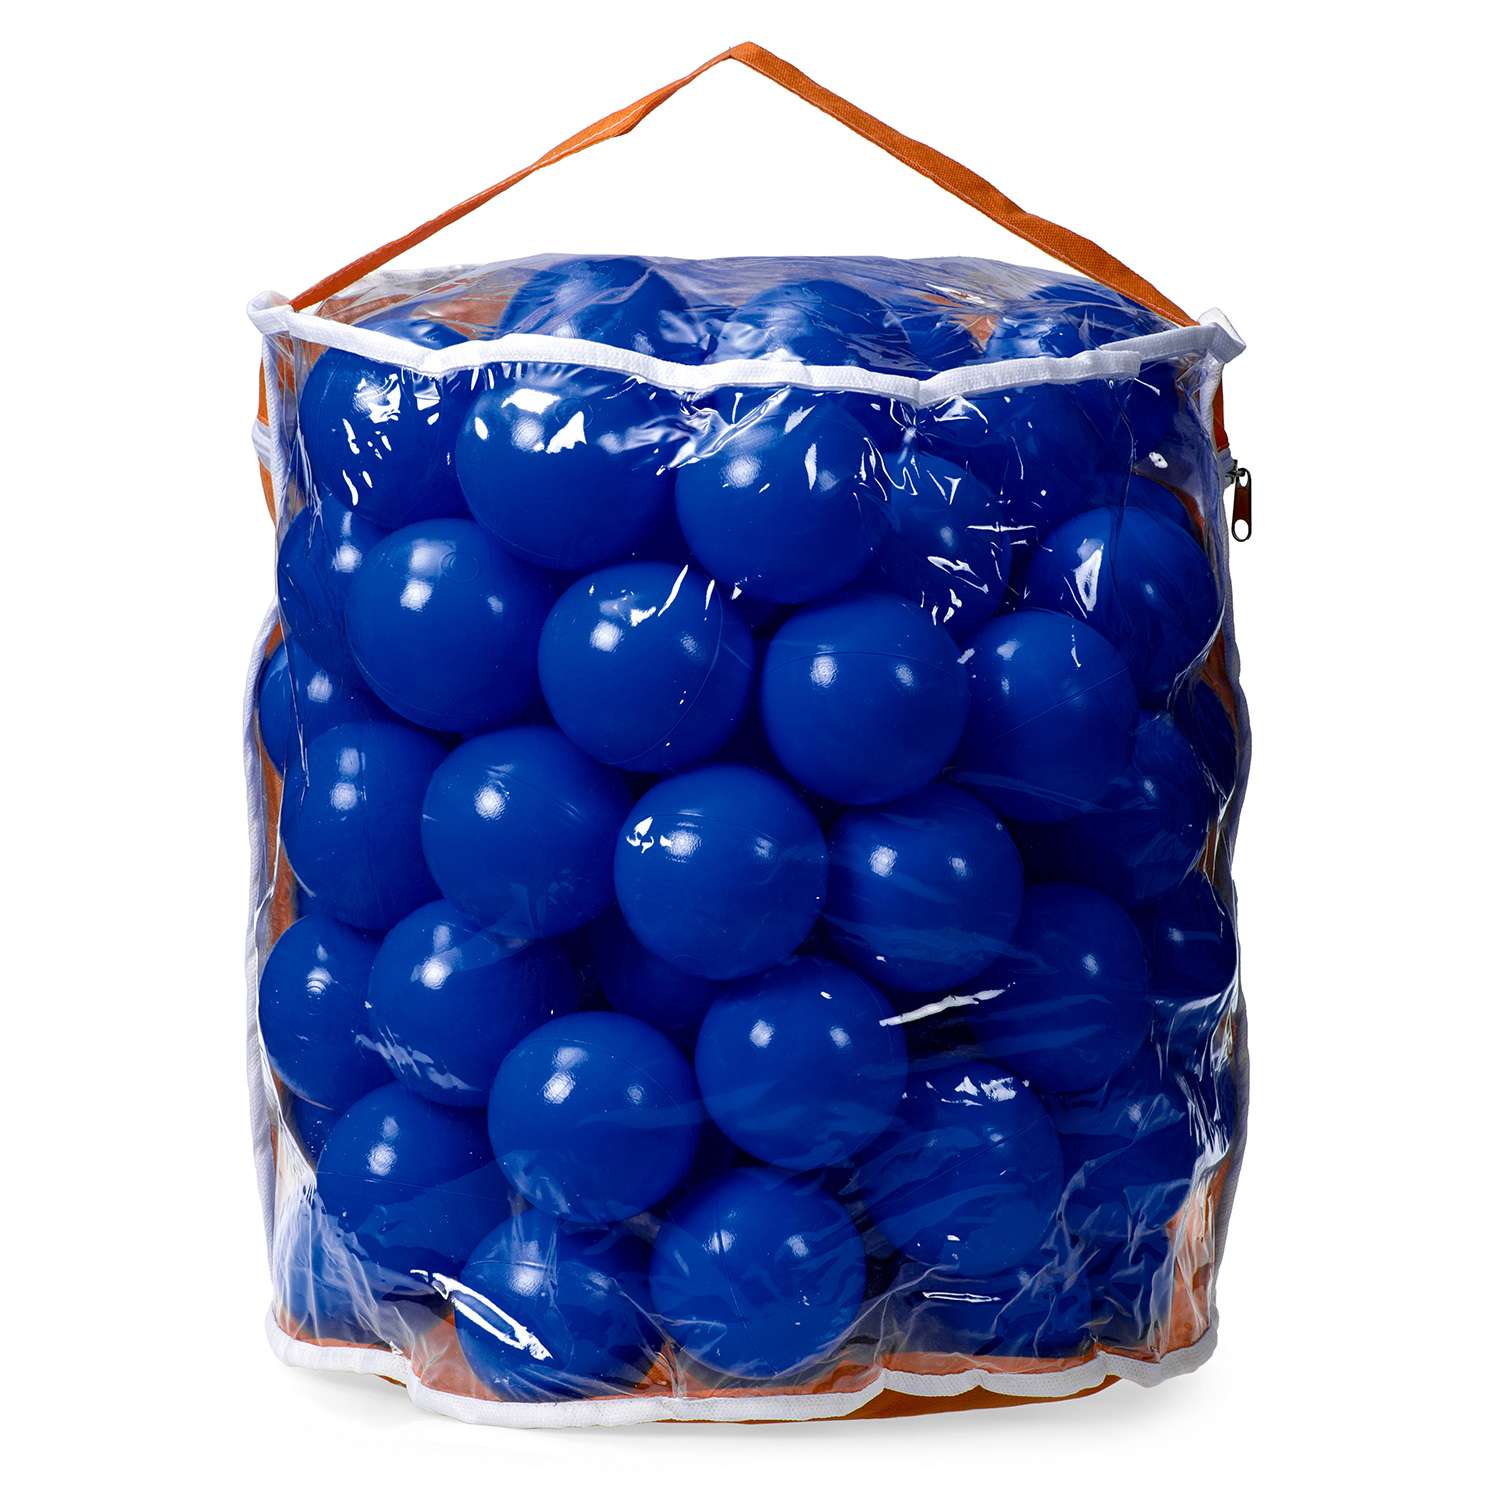 Шарики BABY STYLE Набор для сухого бассейна синий 100 шт d 7 см - фото 2